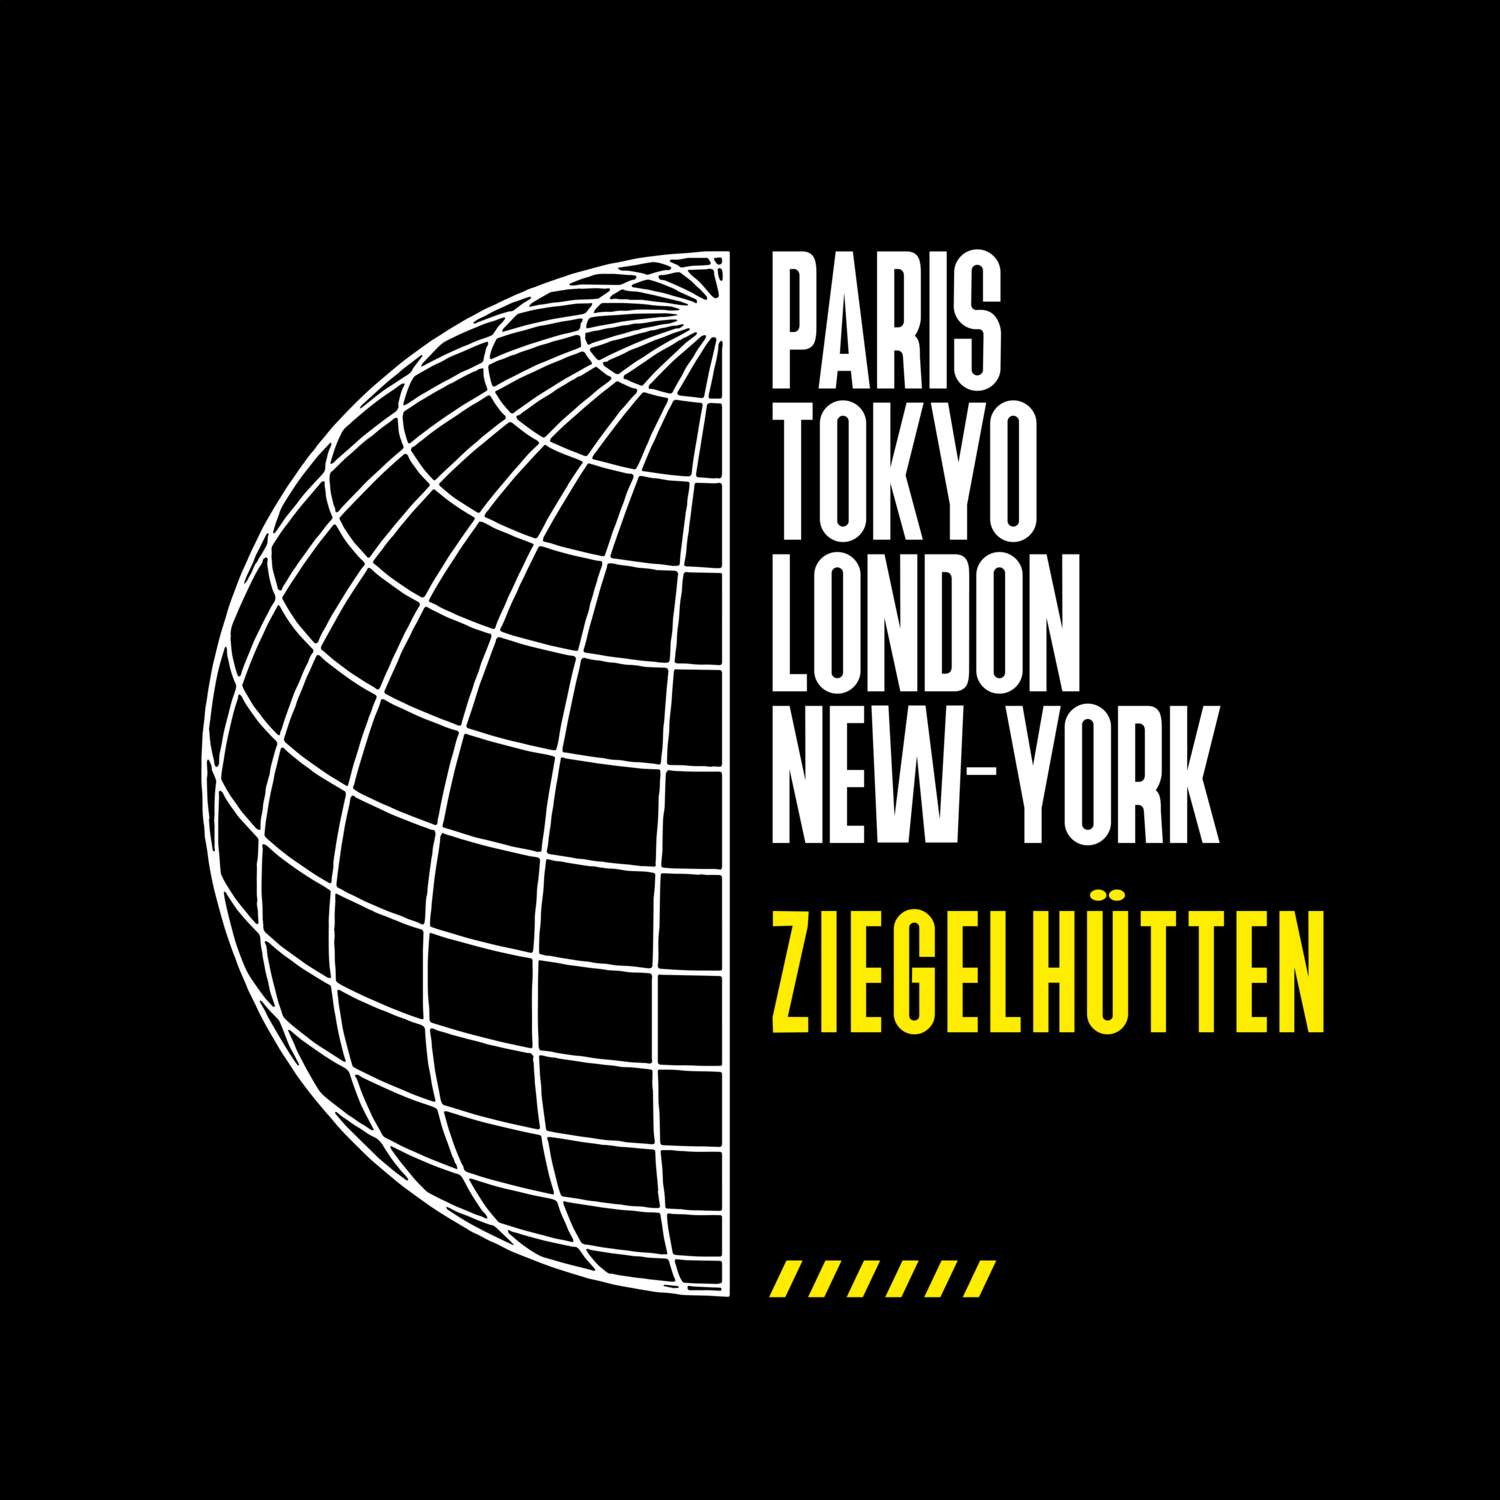 Ziegelhütten T-Shirt »Paris Tokyo London«